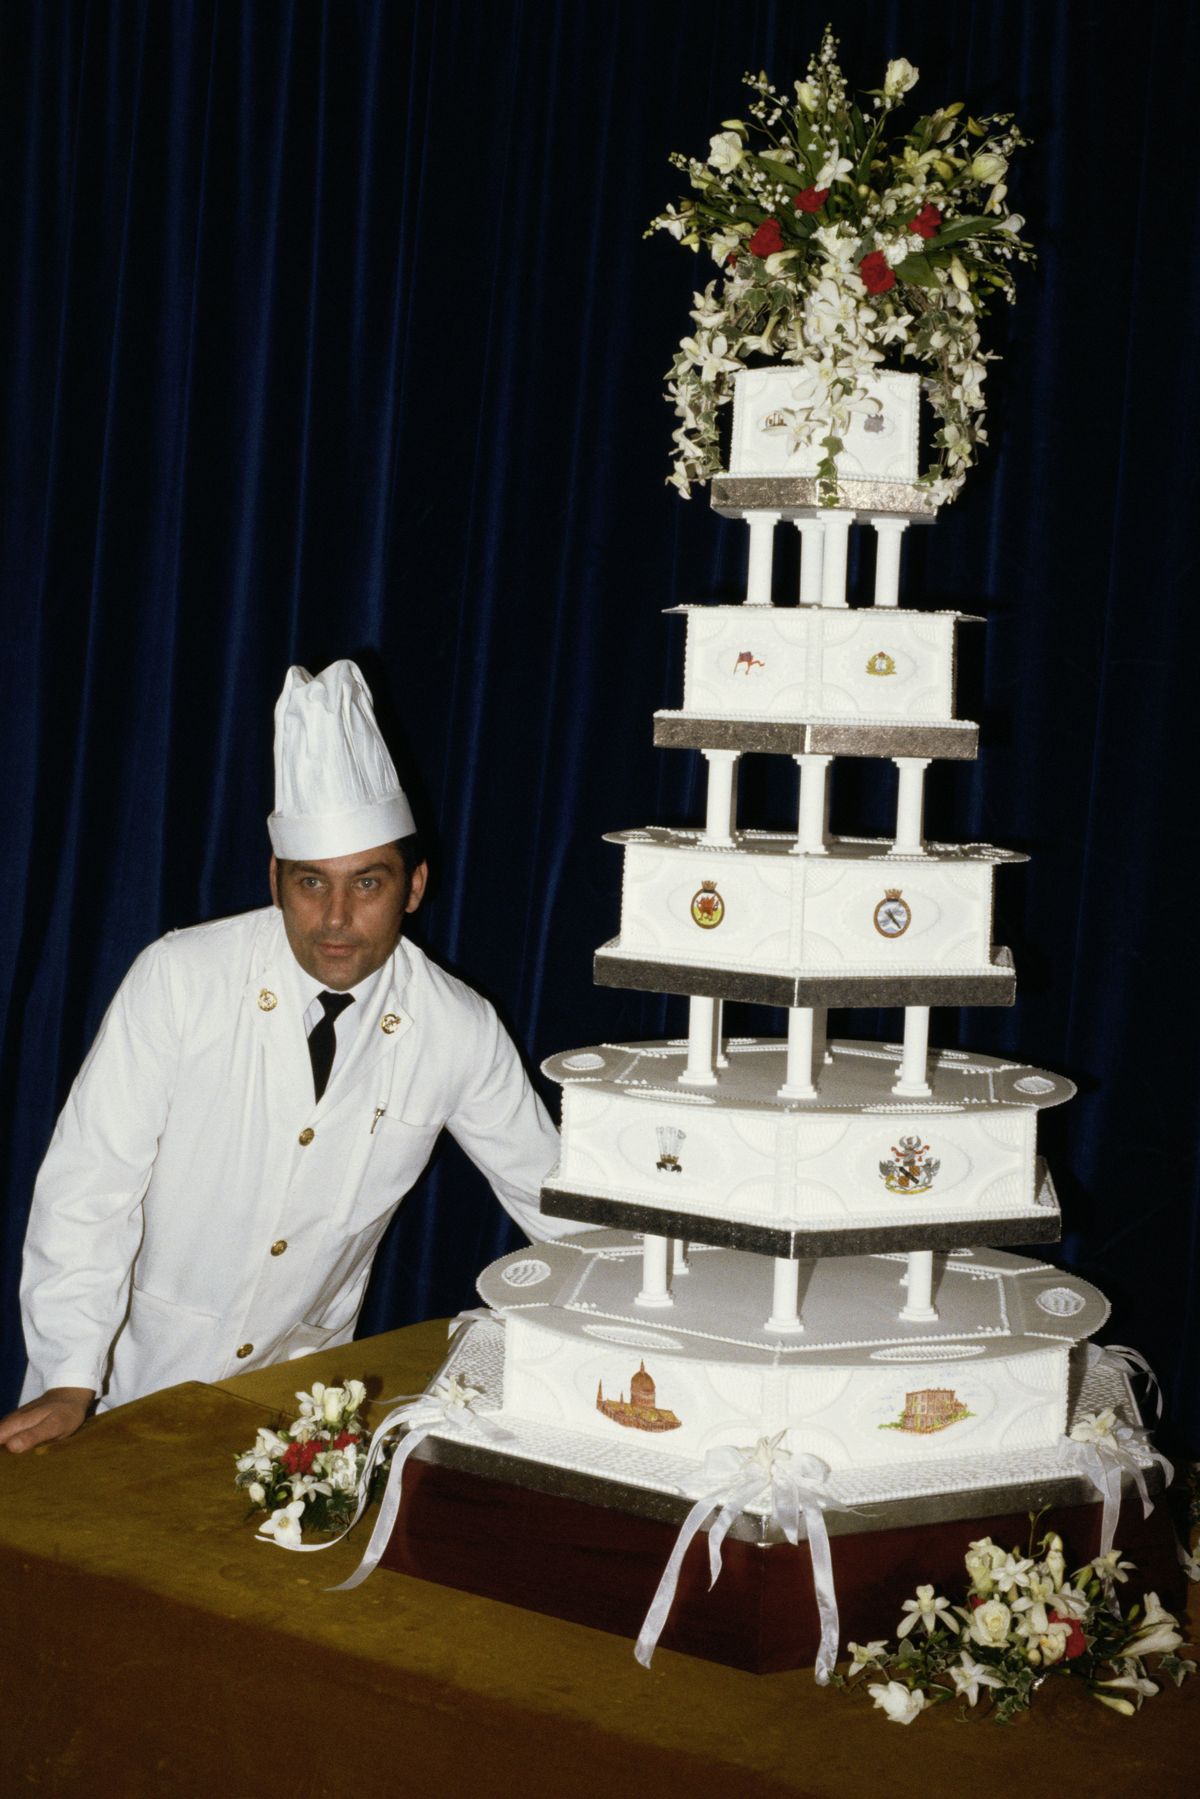 Una rebanada del pastel de bodas de la princesa Diana se vende por una enorme suma